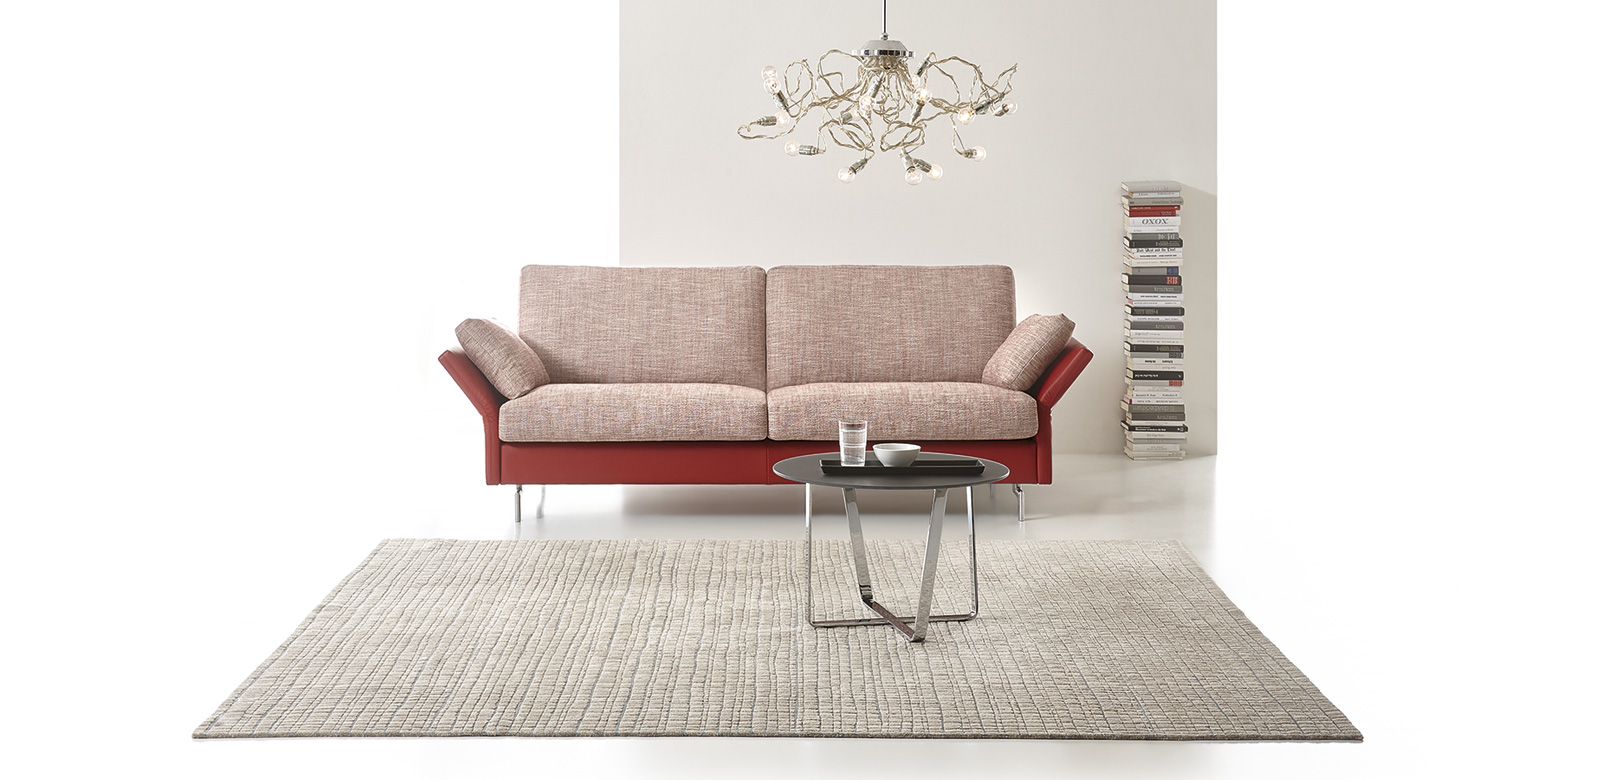 CL990 Sofa in rood-witte stof gecombineerd met rood lederen elementen